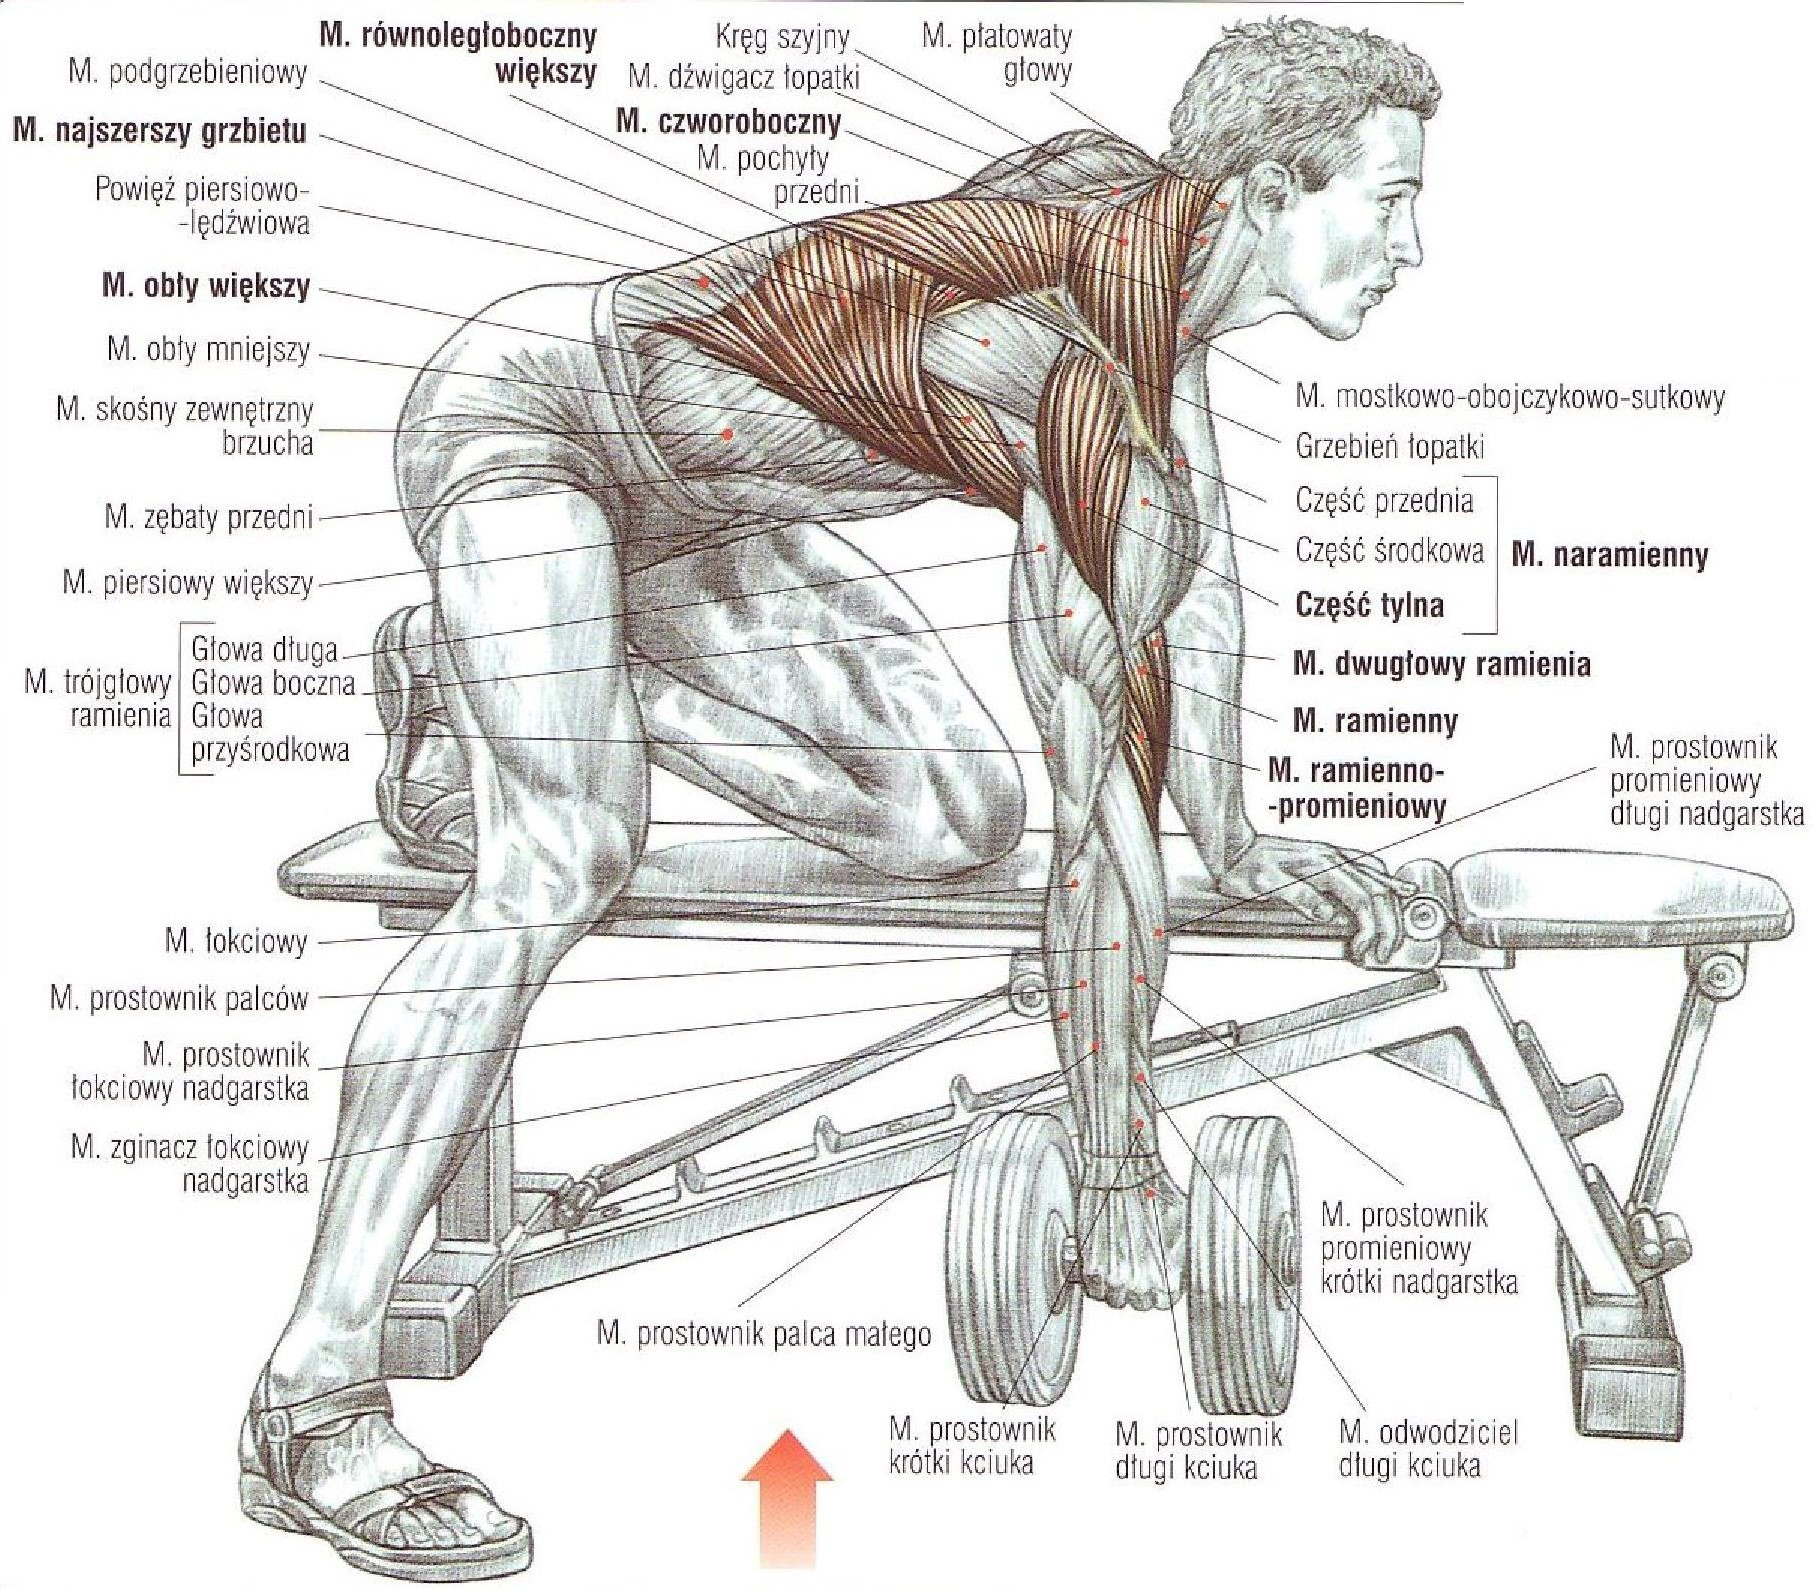 Правильная качка. Упражнения на развитие широчайшей мышцы спины. Как прокачать широчайшие мышцы спины. Упражнения для широчайших мышц спины со штангой. Прокачка широчайших мышц спины штангой.